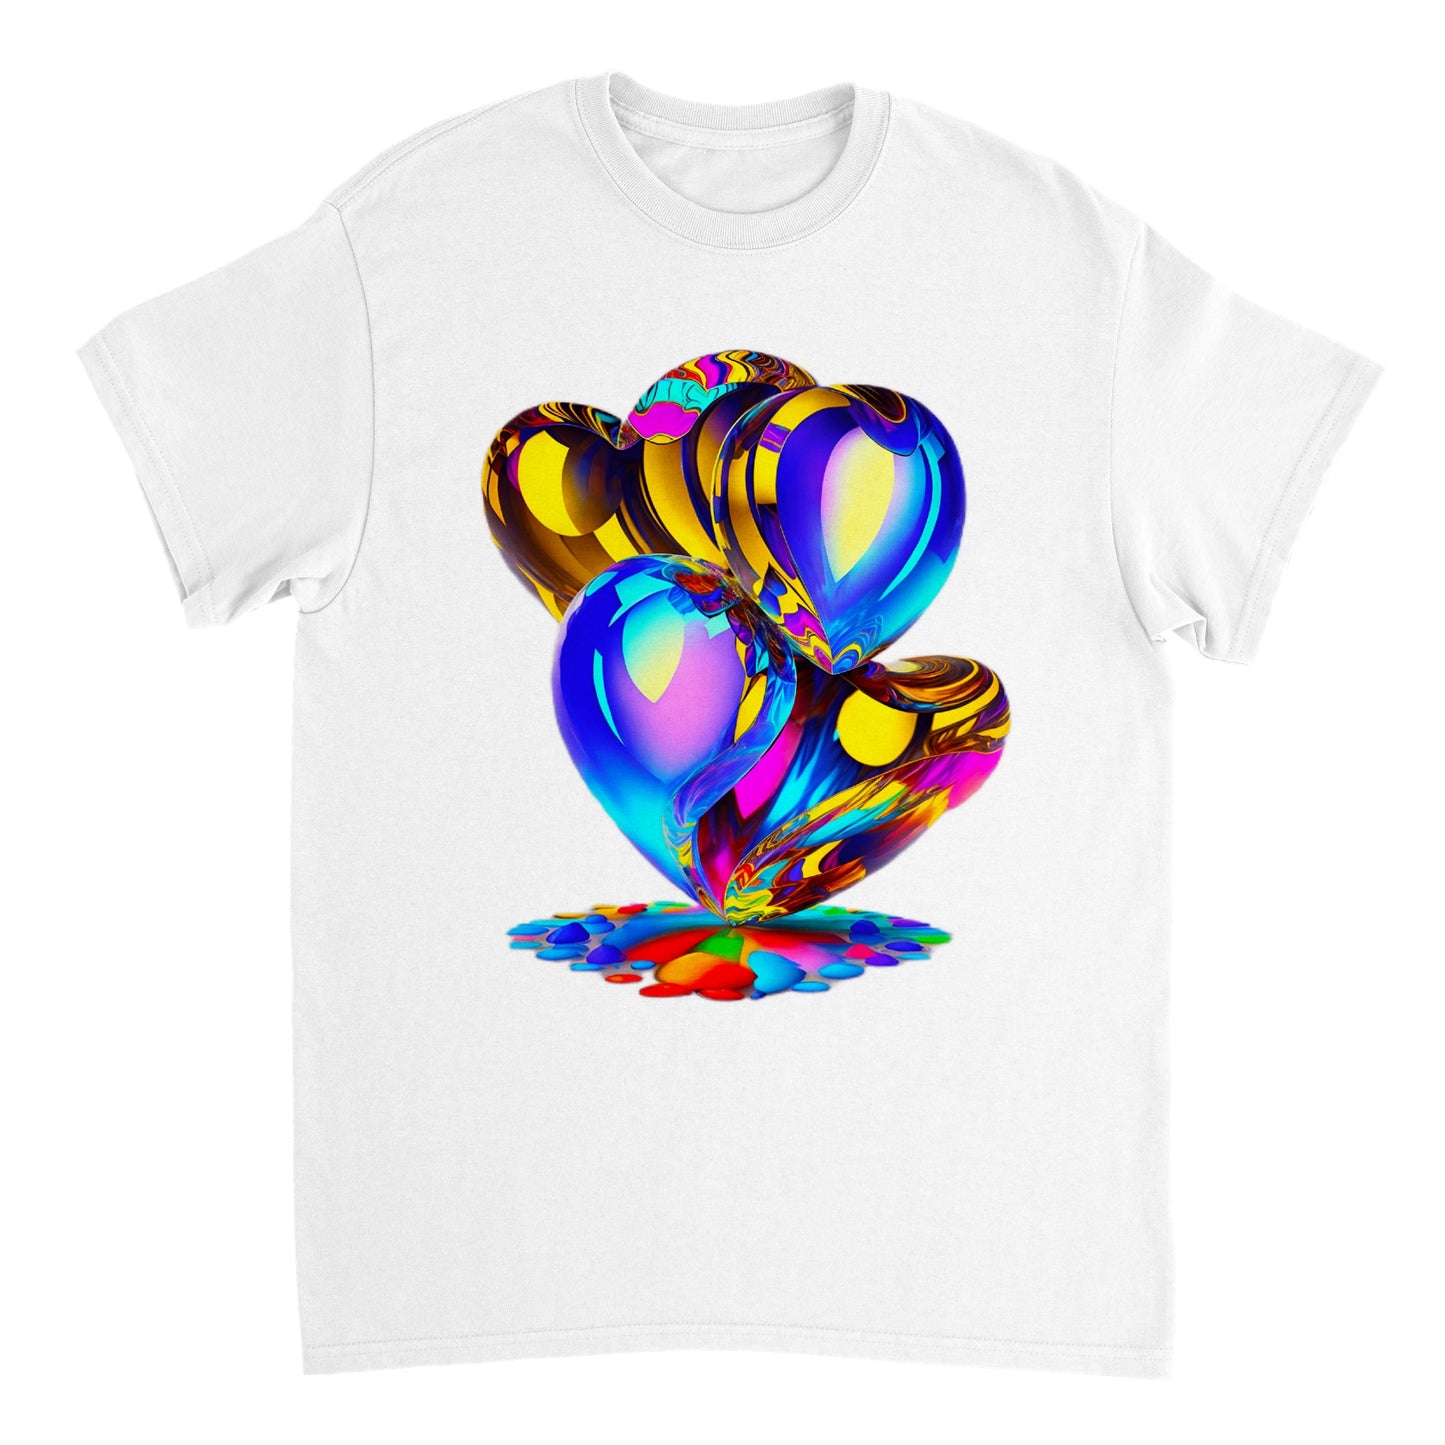 Love Heart - Heavyweight Unisex Crewneck T-shirt 3